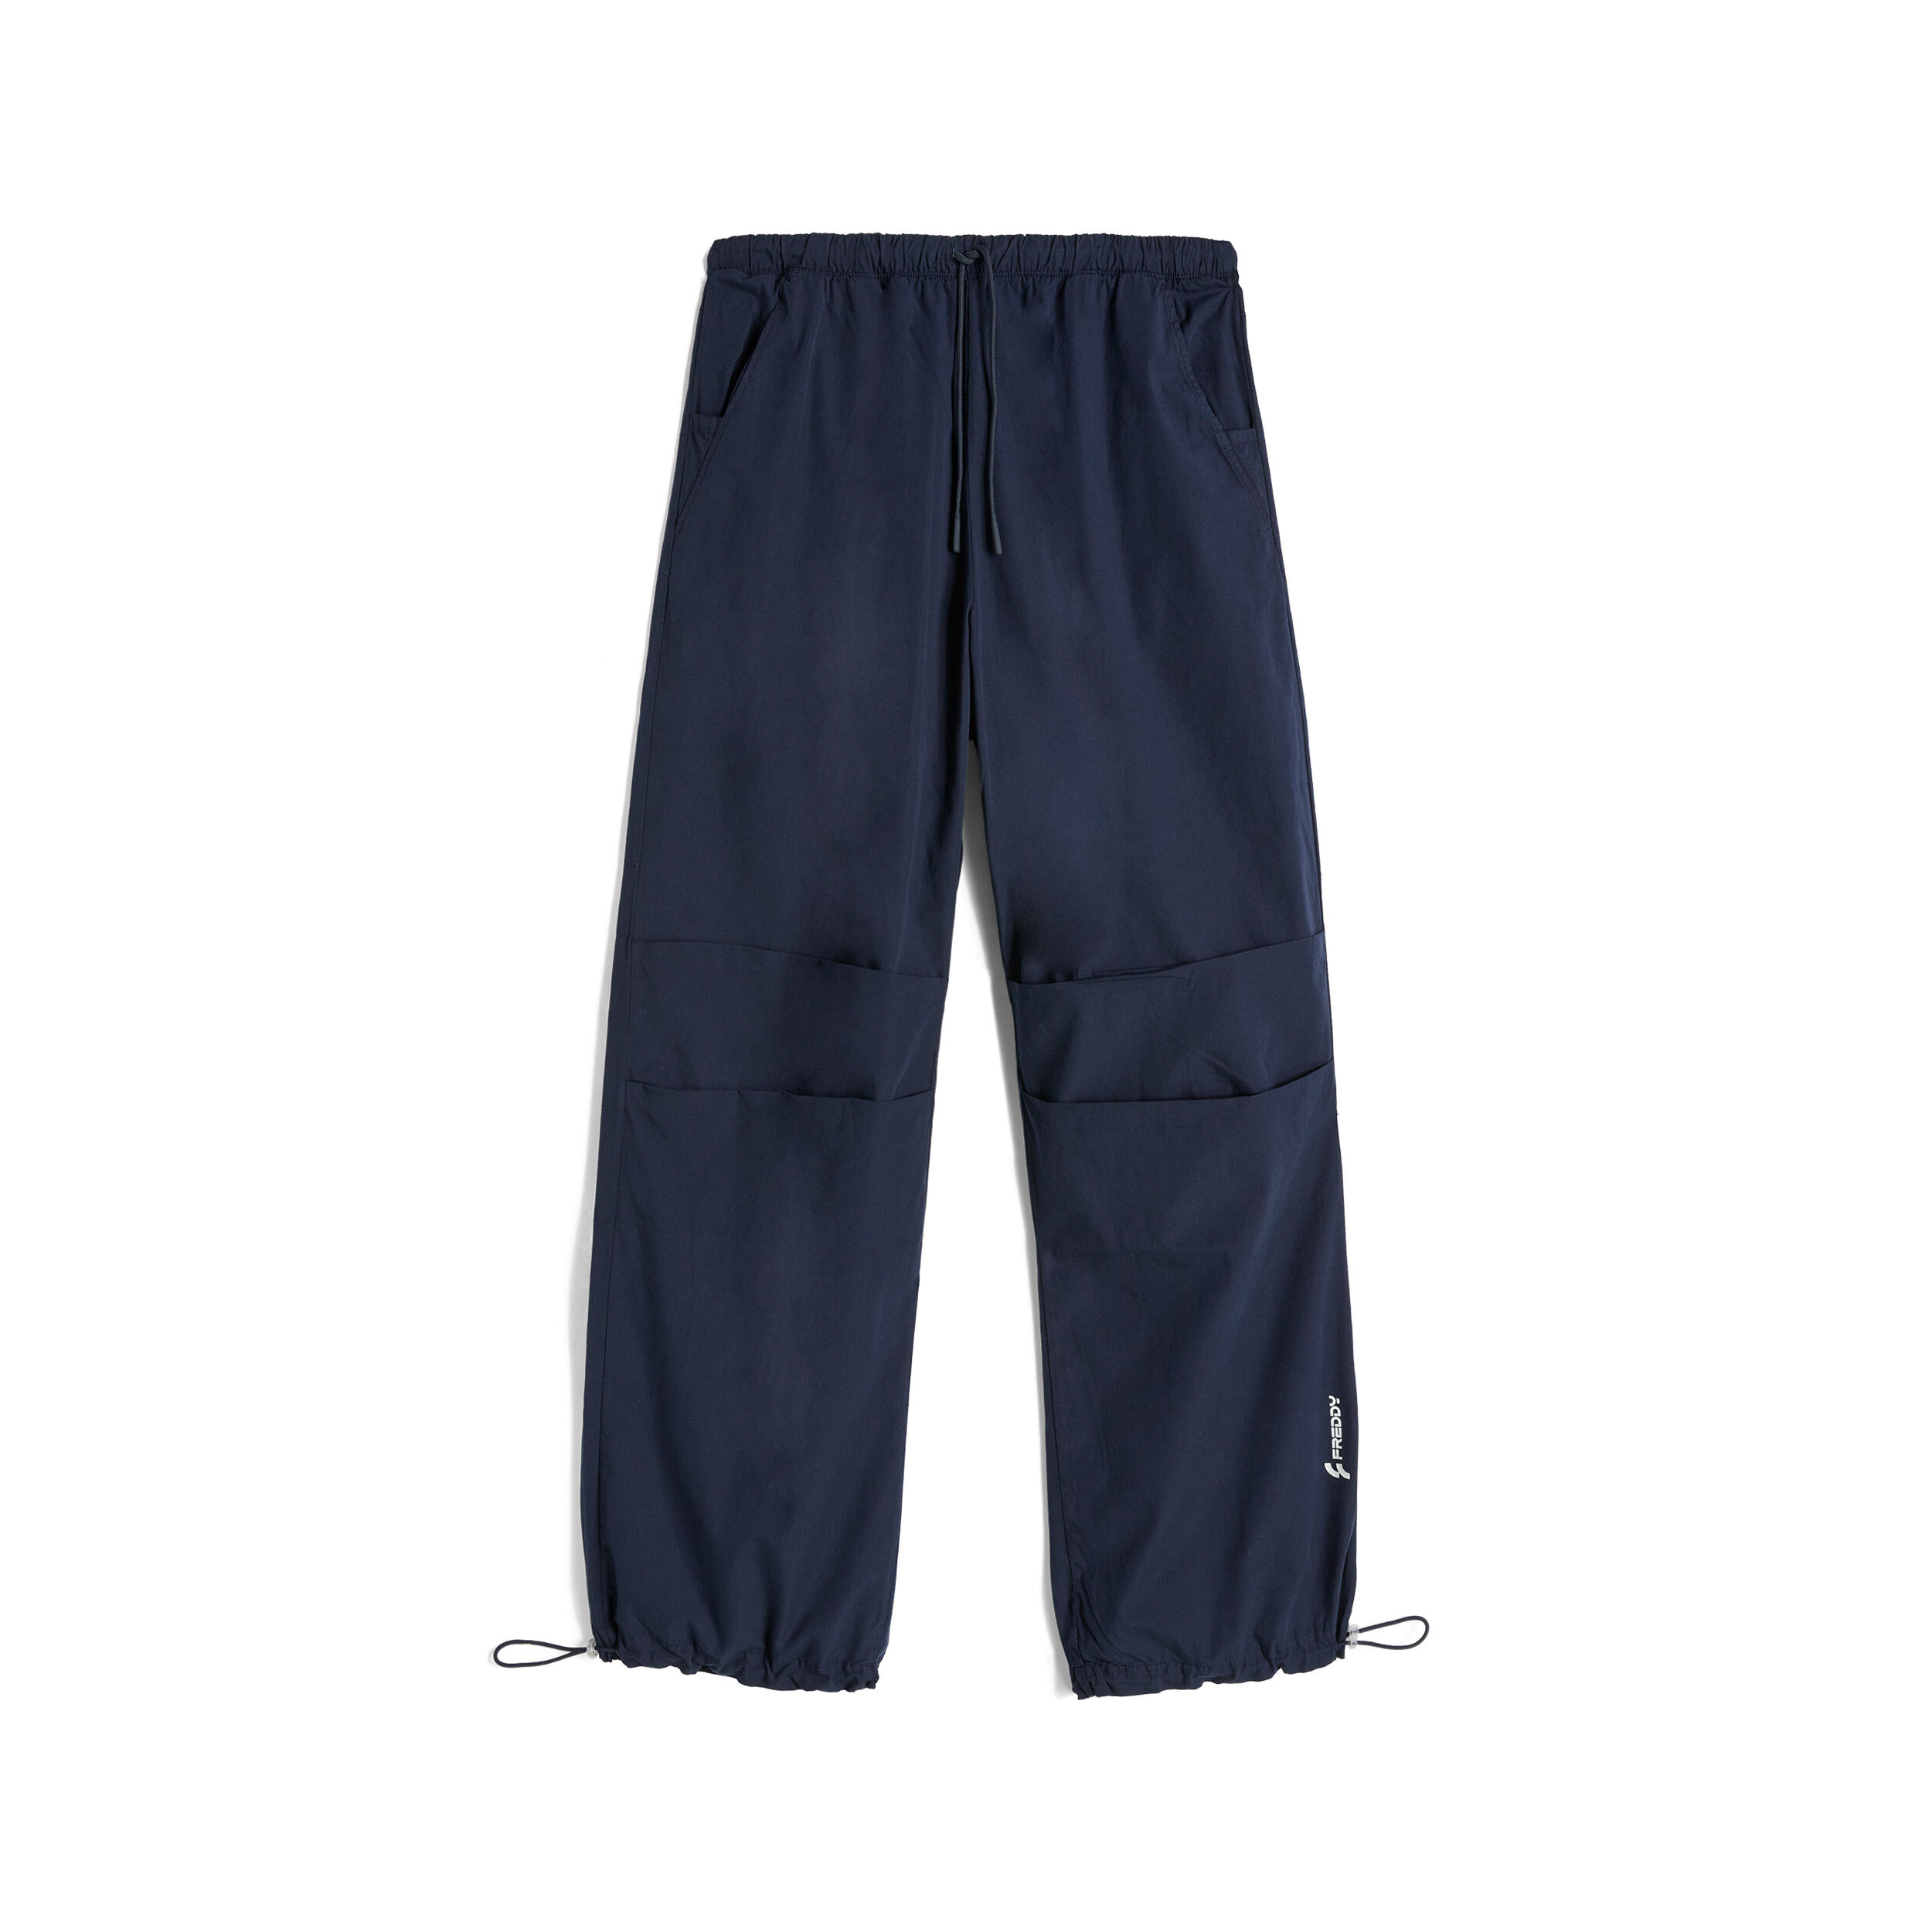 Freddy Pantaloni stile parachute pants in popeline Blu Navy Donna Large